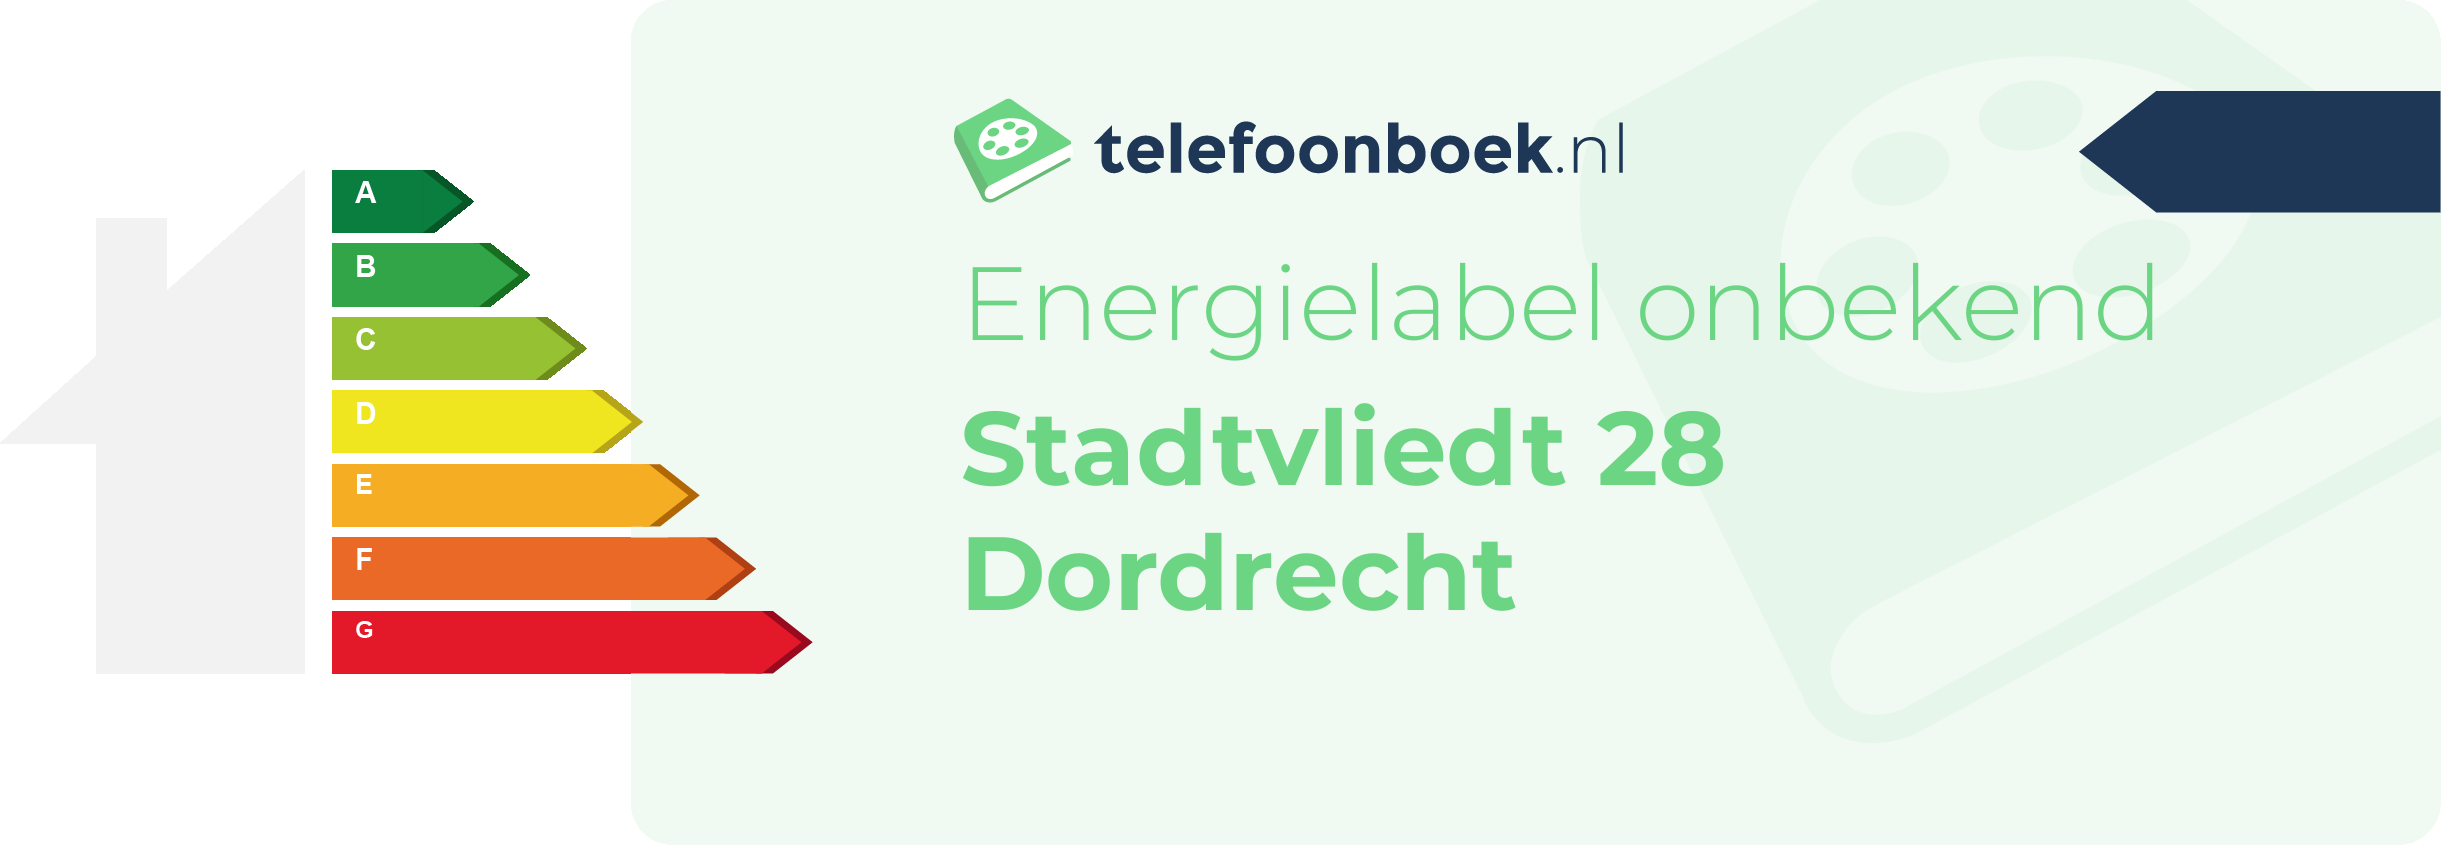 Energielabel Stadtvliedt 28 Dordrecht